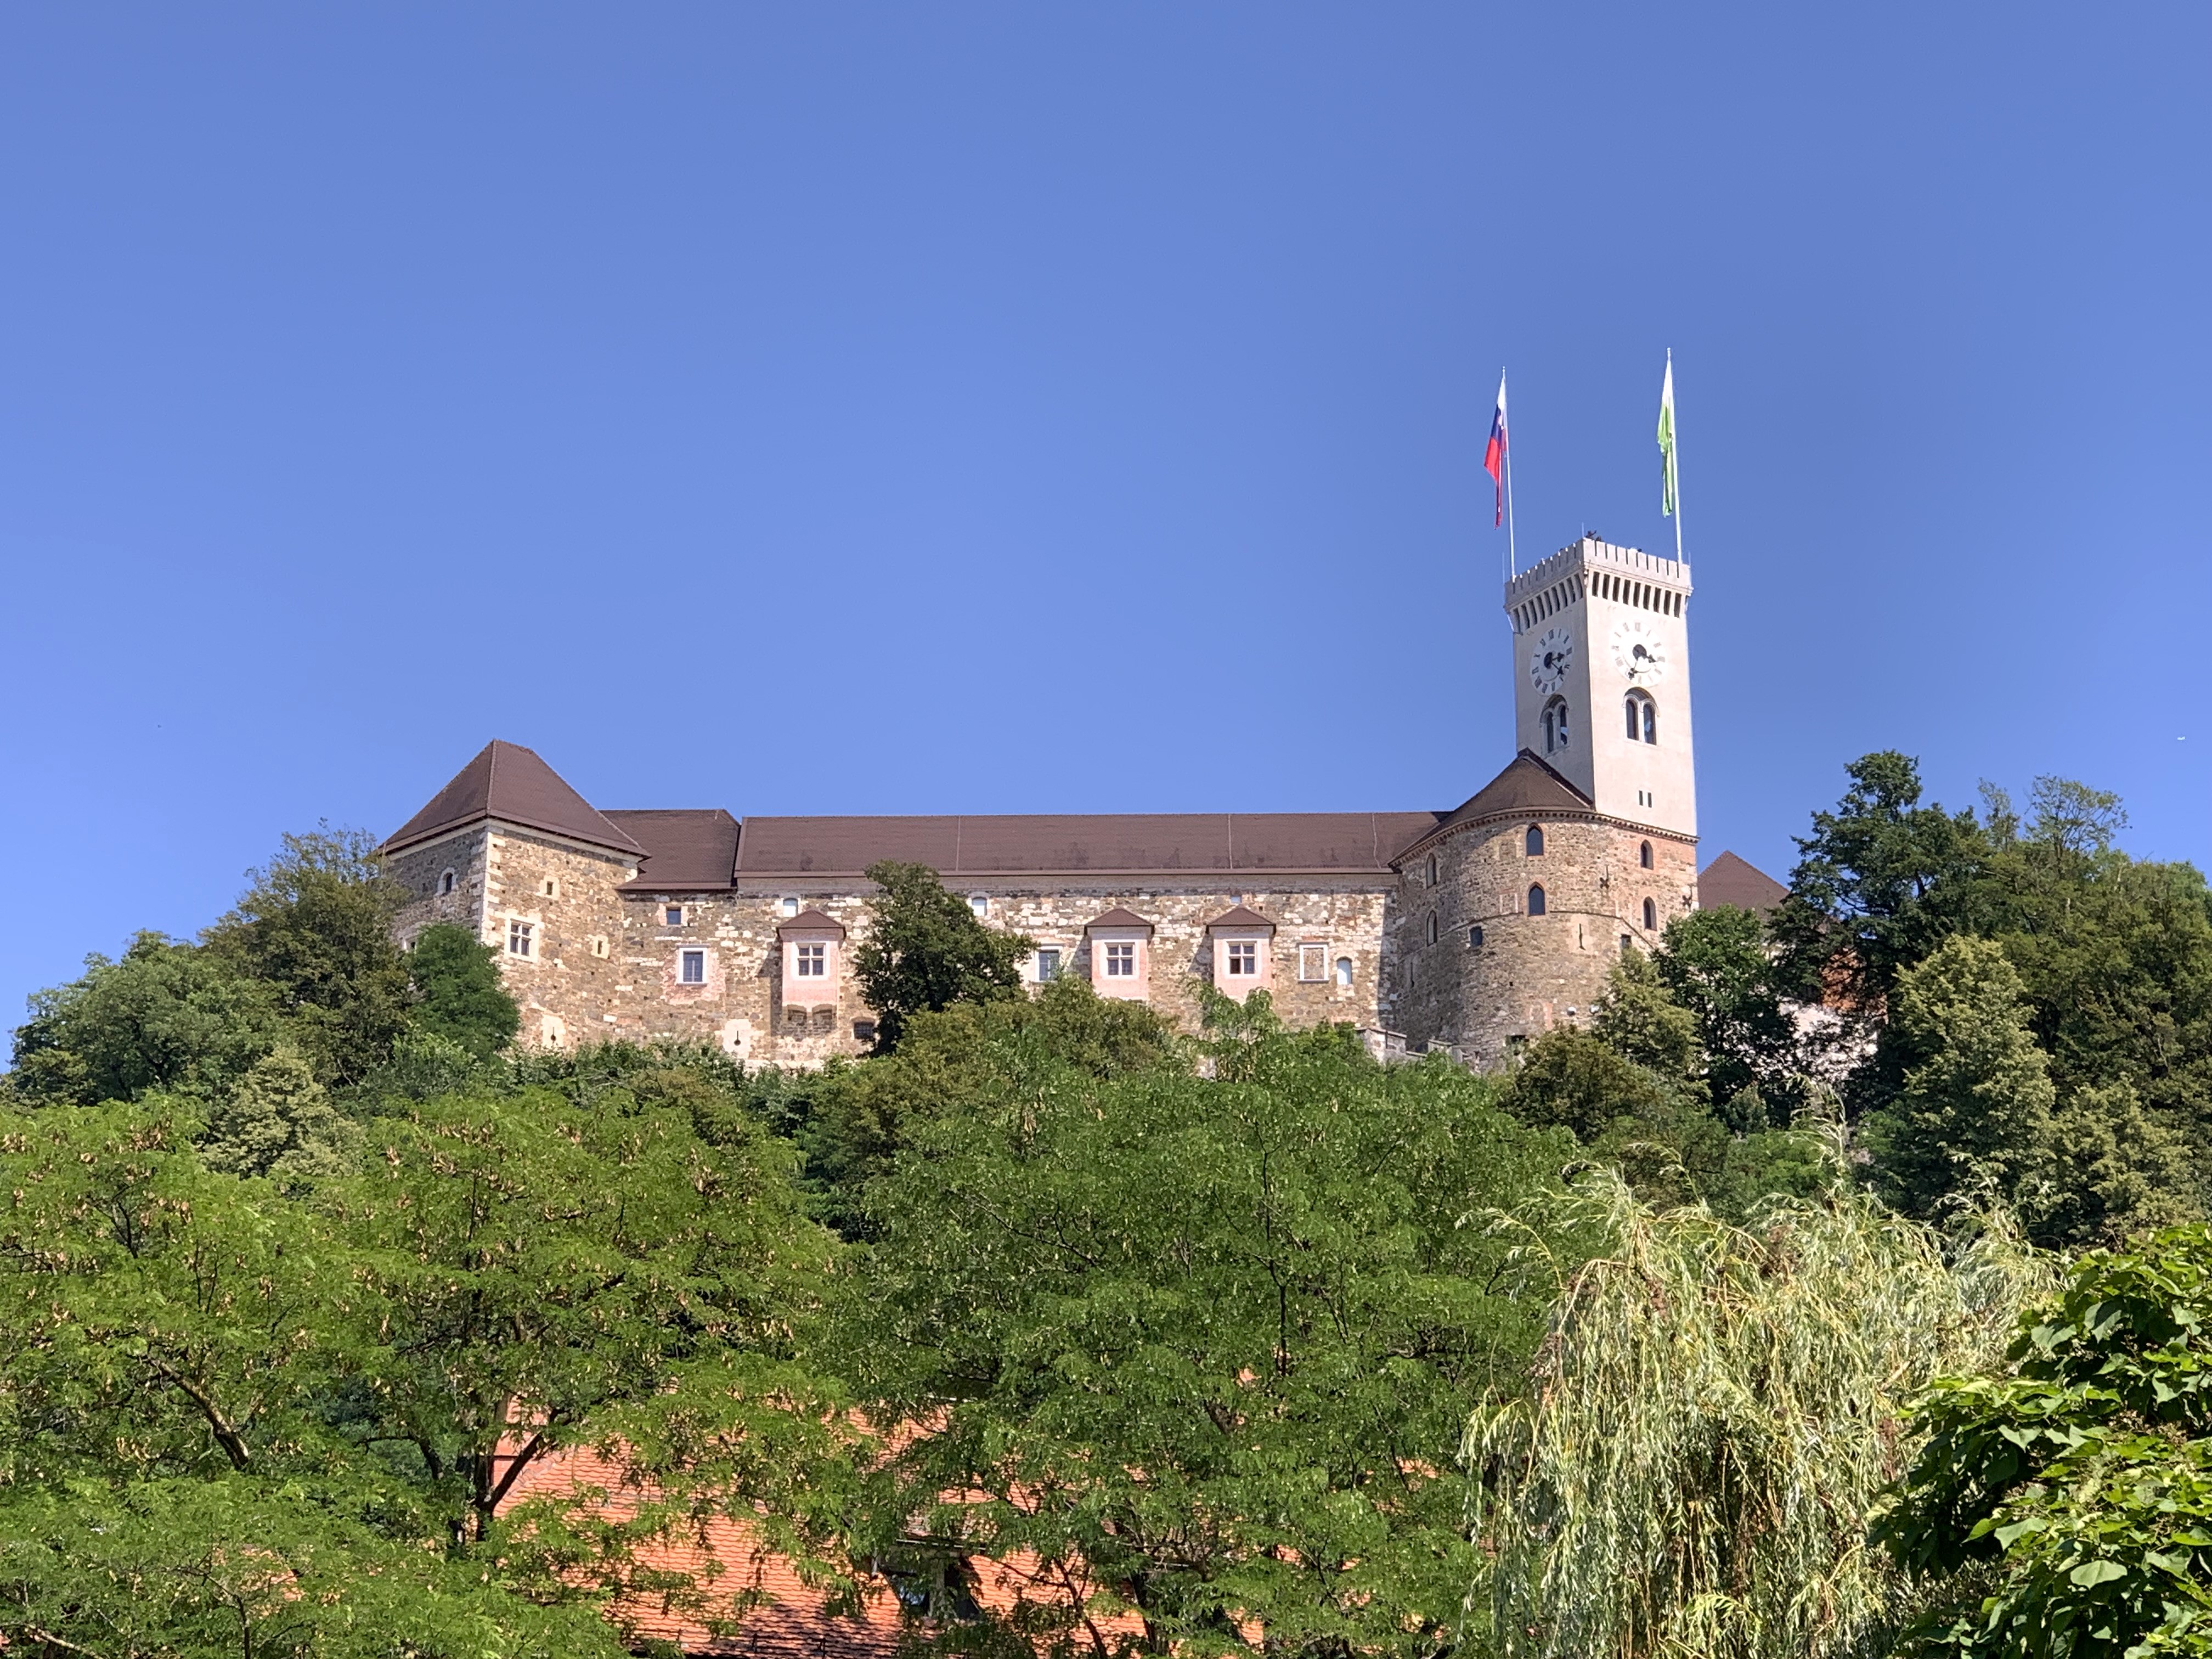 1213 - 06 - Il Castello di Lubiana - Slovenia